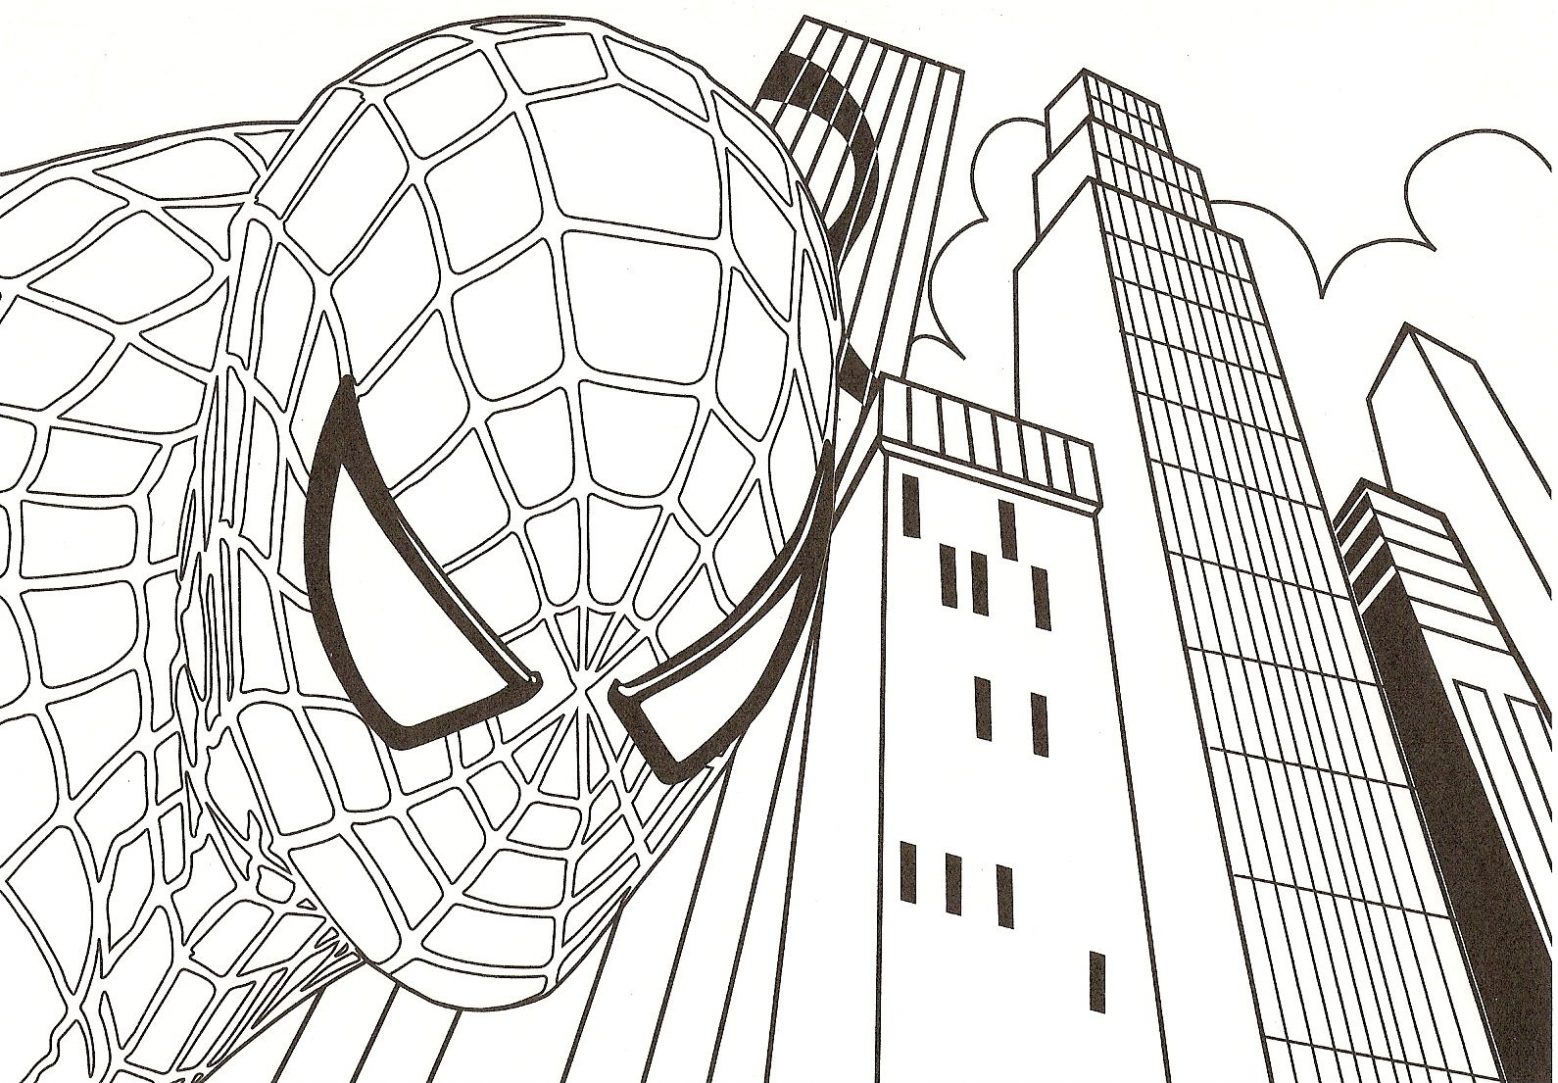 Dibujos para colorear de Spiderman (I) | Dibujos para ...